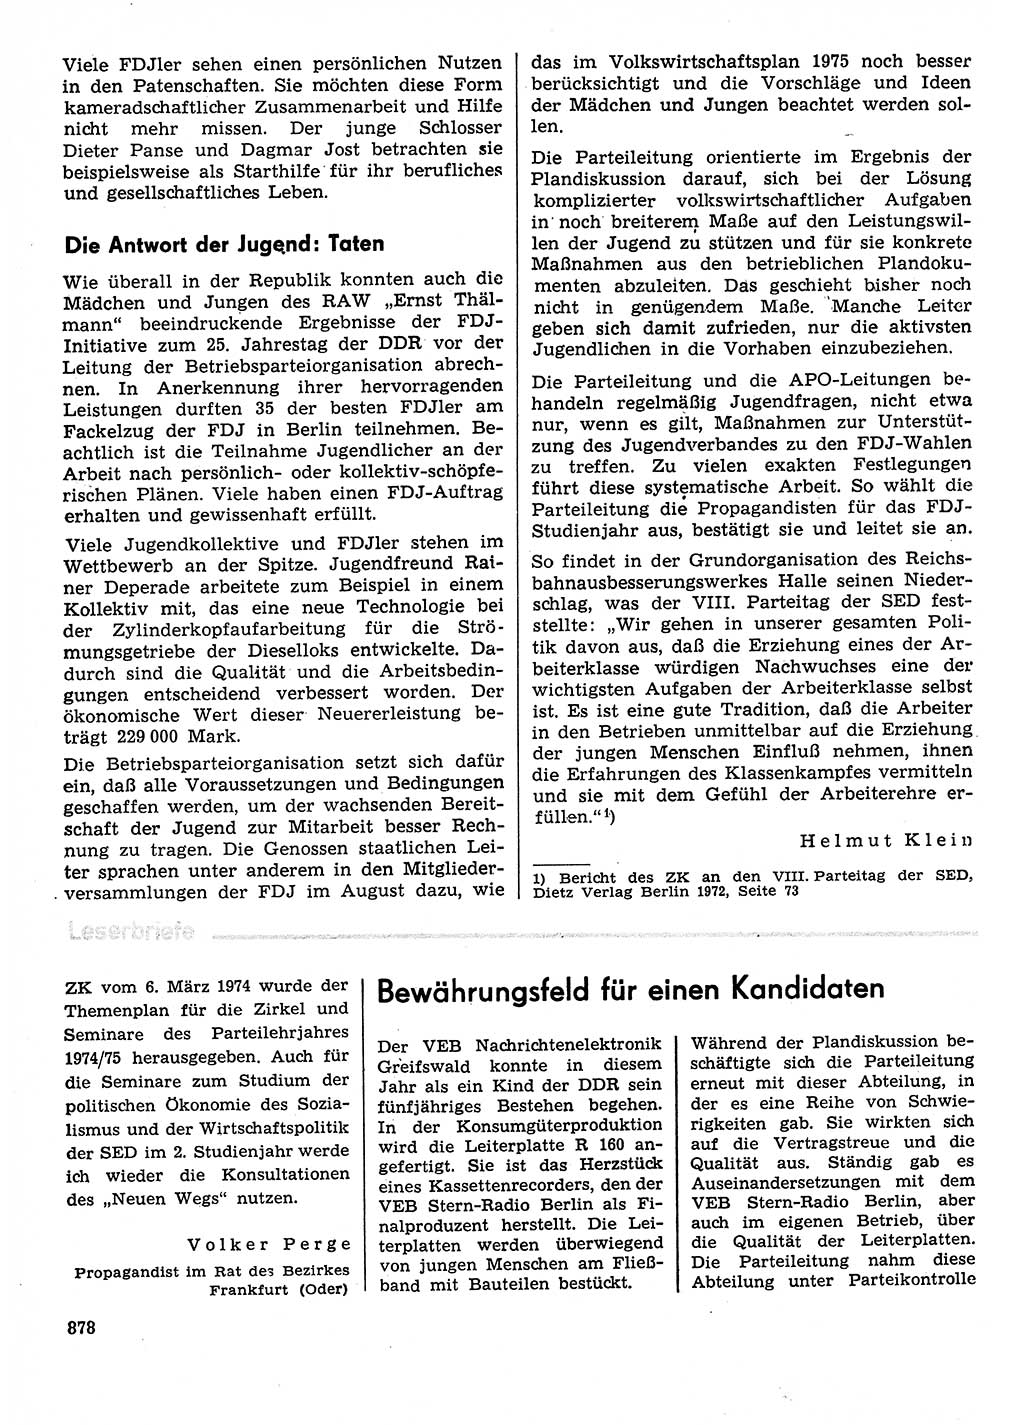 Neuer Weg (NW), Organ des Zentralkomitees (ZK) der SED (Sozialistische Einheitspartei Deutschlands) für Fragen des Parteilebens, 29. Jahrgang [Deutsche Demokratische Republik (DDR)] 1974, Seite 878 (NW ZK SED DDR 1974, S. 878)